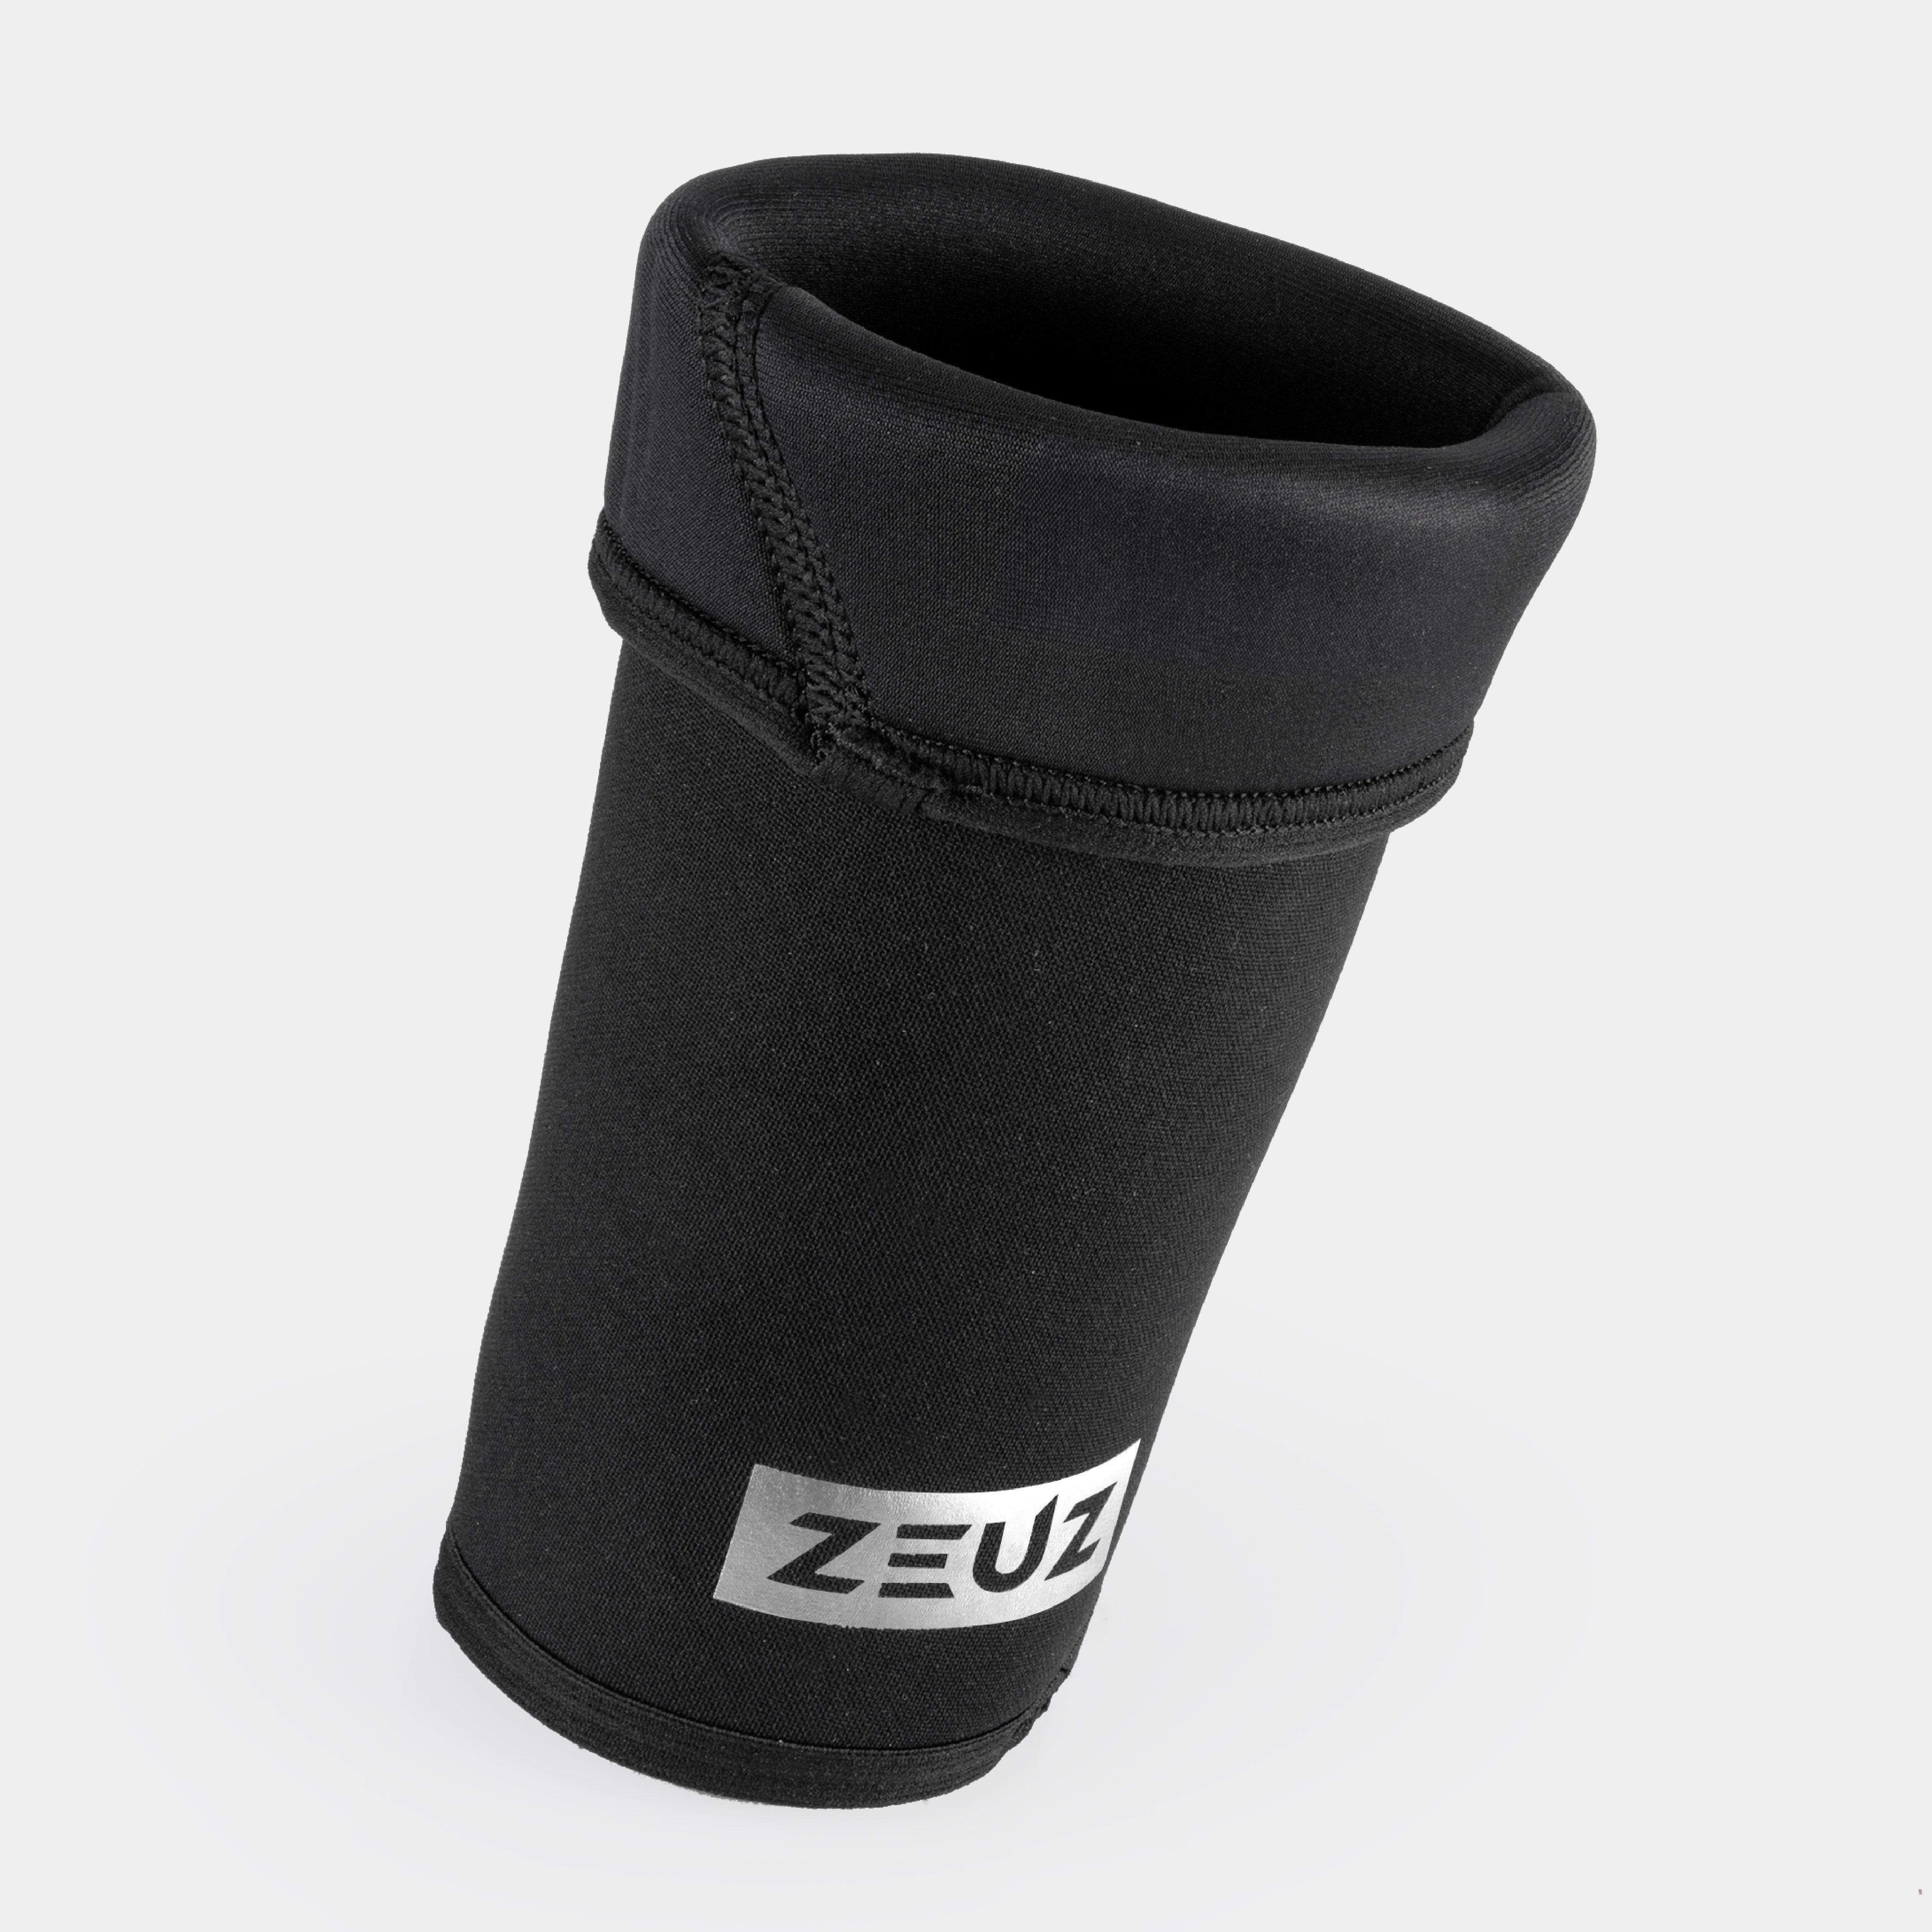 ZEUZ Powerlifting Knee sleeves - Knie banden - Brace